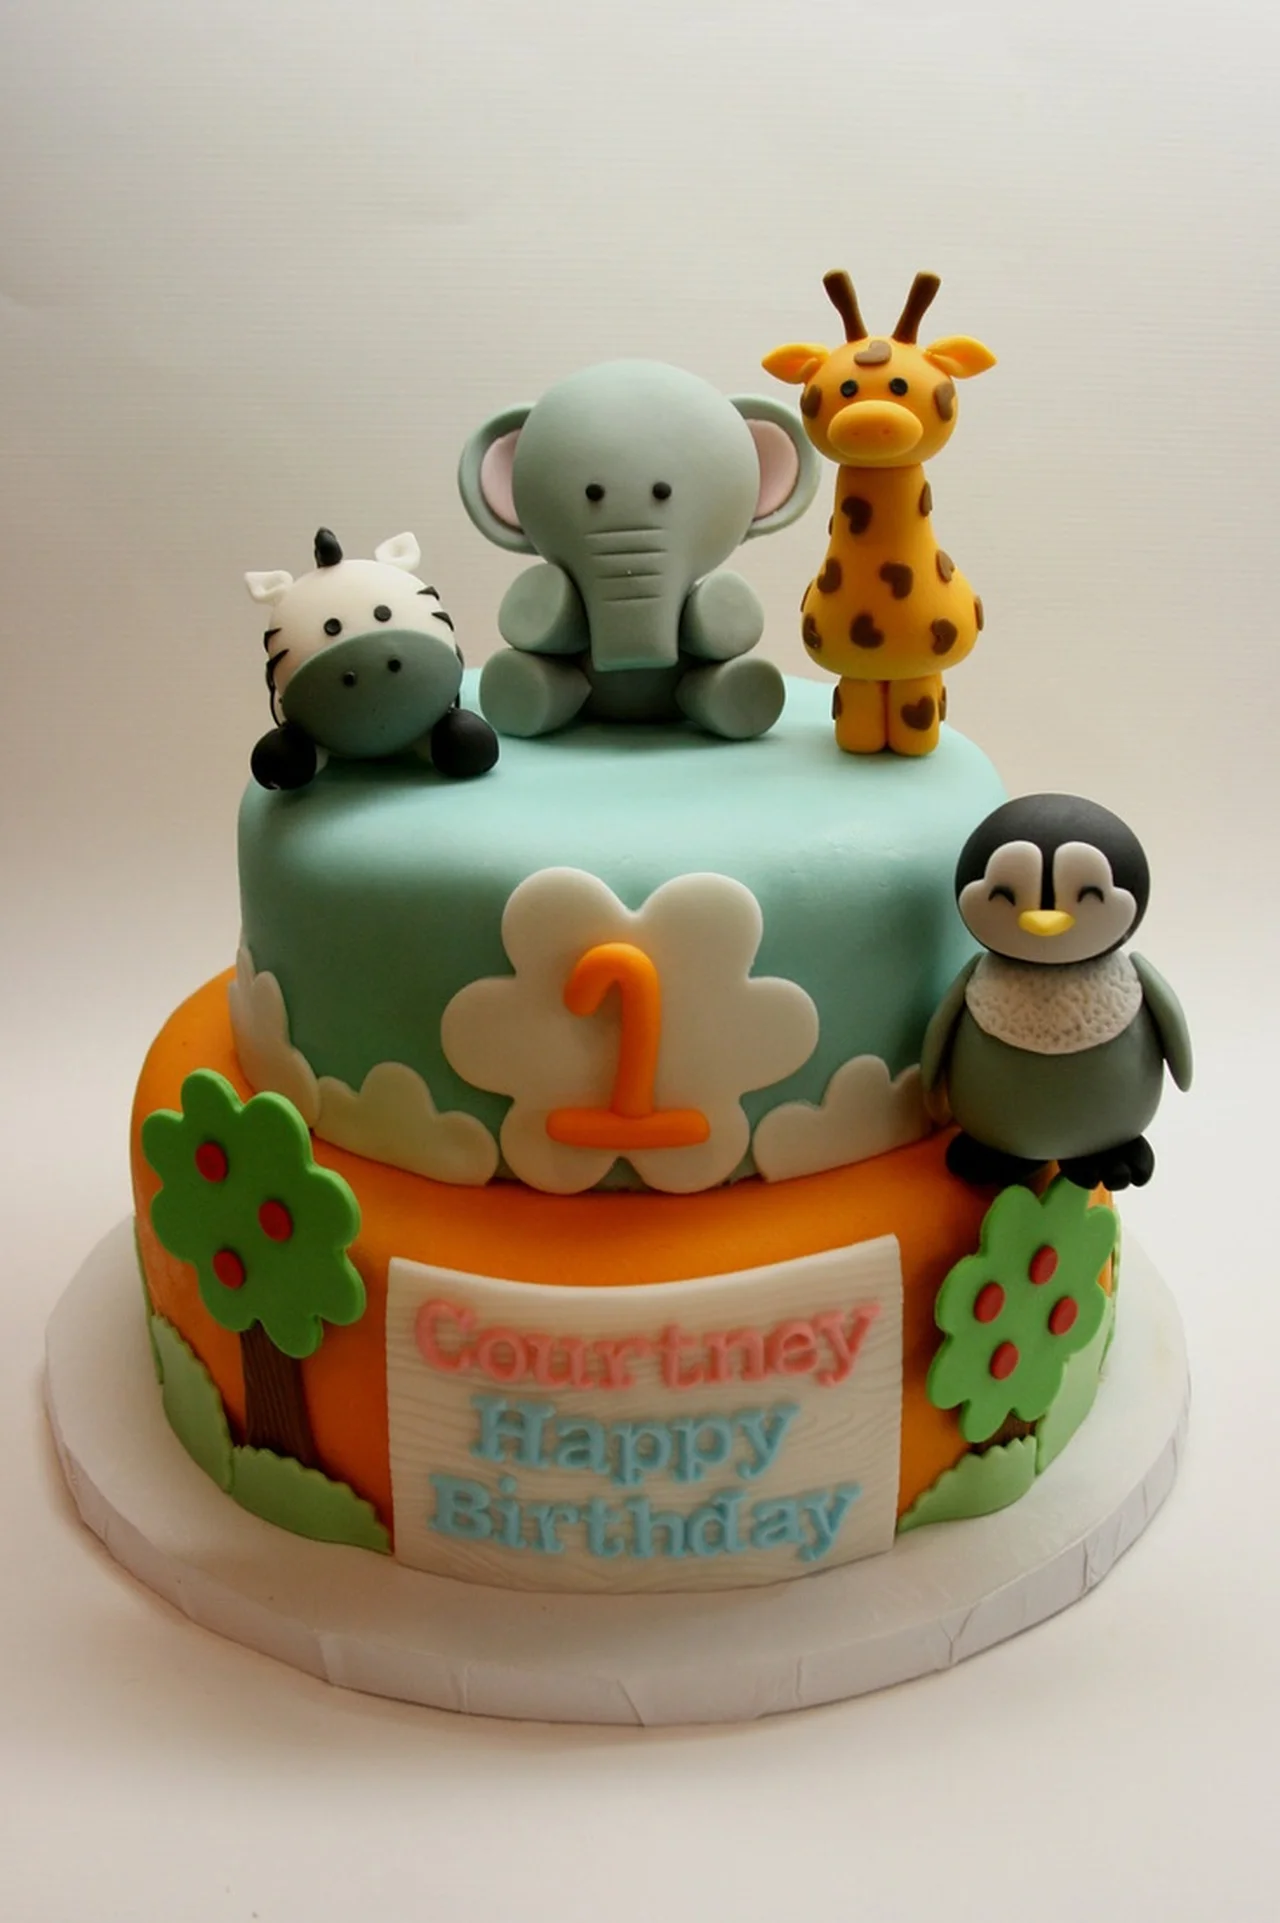 Tort urodzinowy dla dziecka